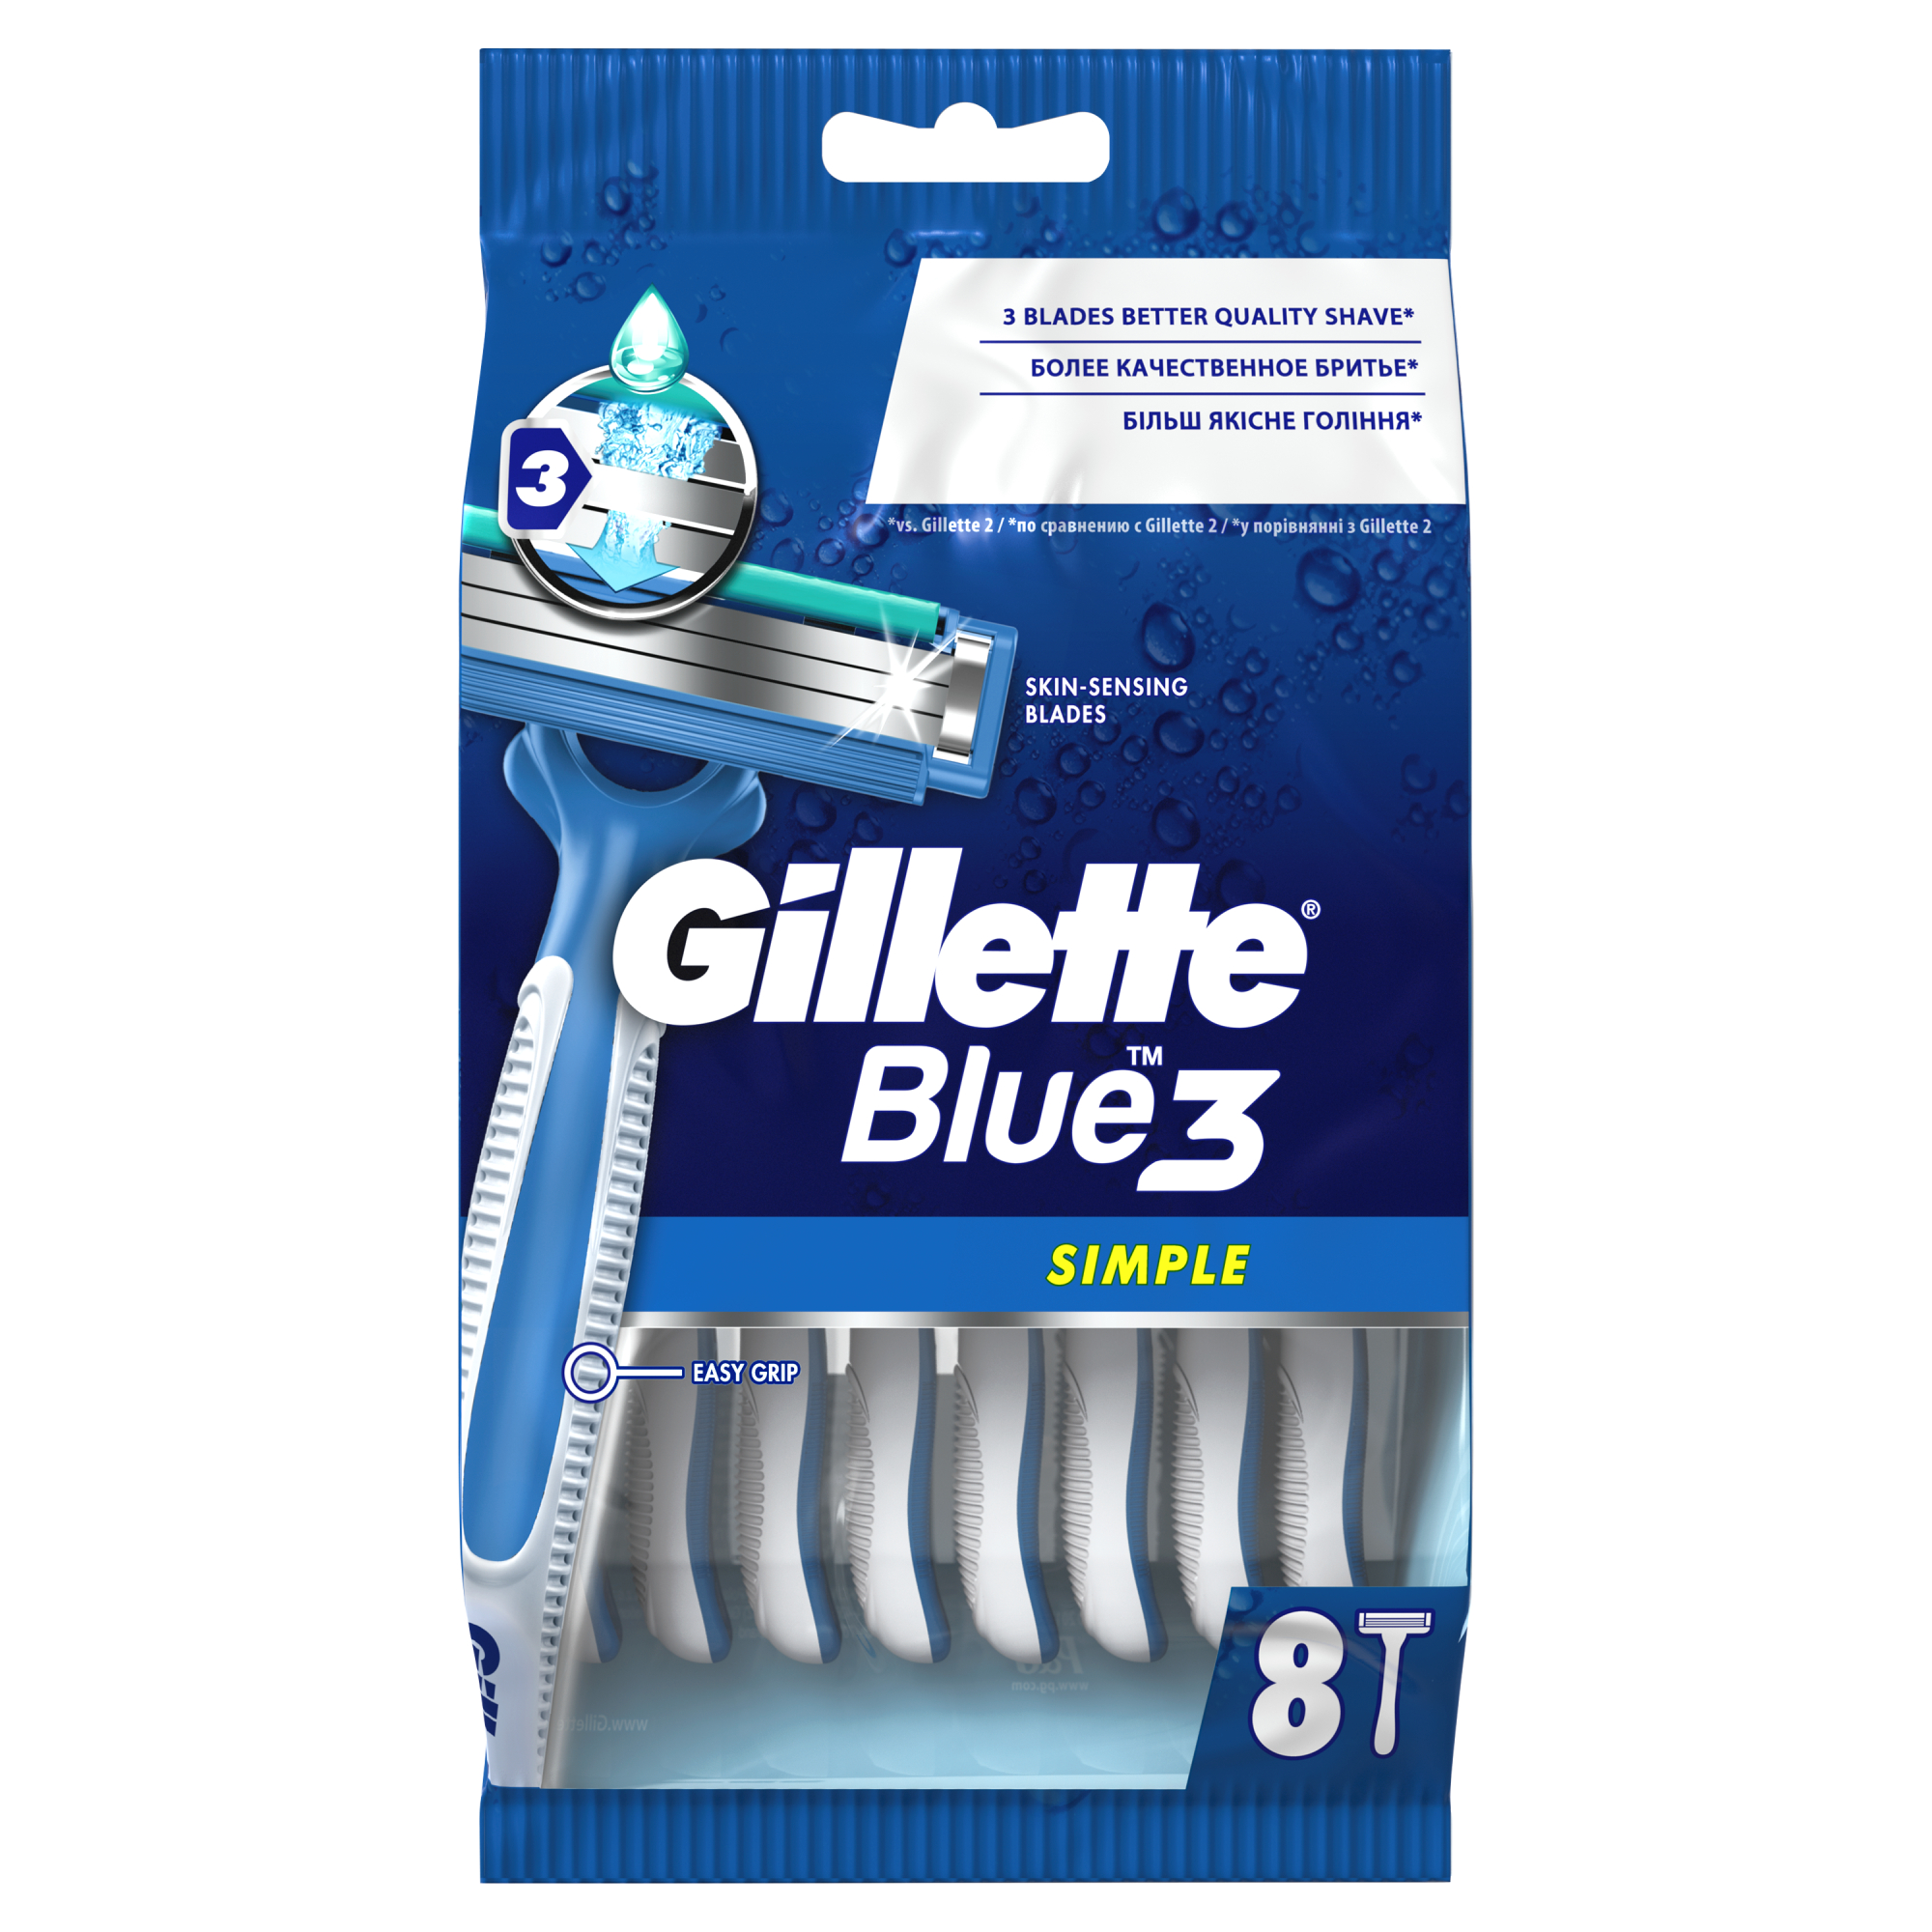 Одноразовые мужские бритвы Gillette Blue3 Simple, с 3 лезвиями, 8, фиксированная головка